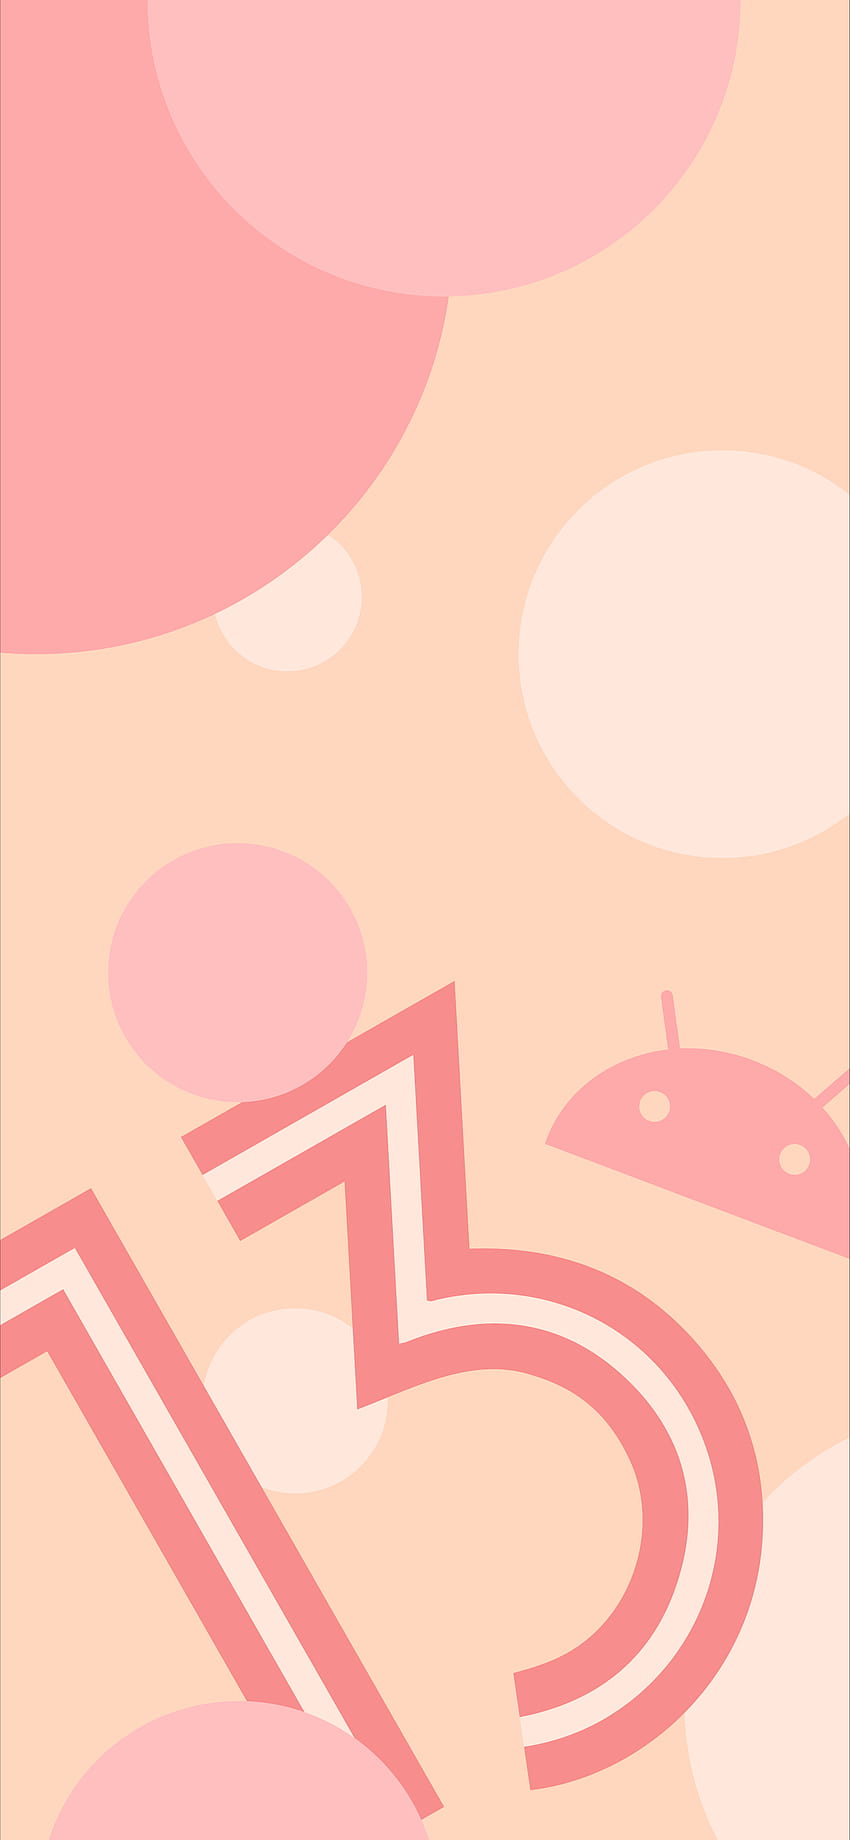 Android 13 Art Wallpaper 2K  rDragonballLegends